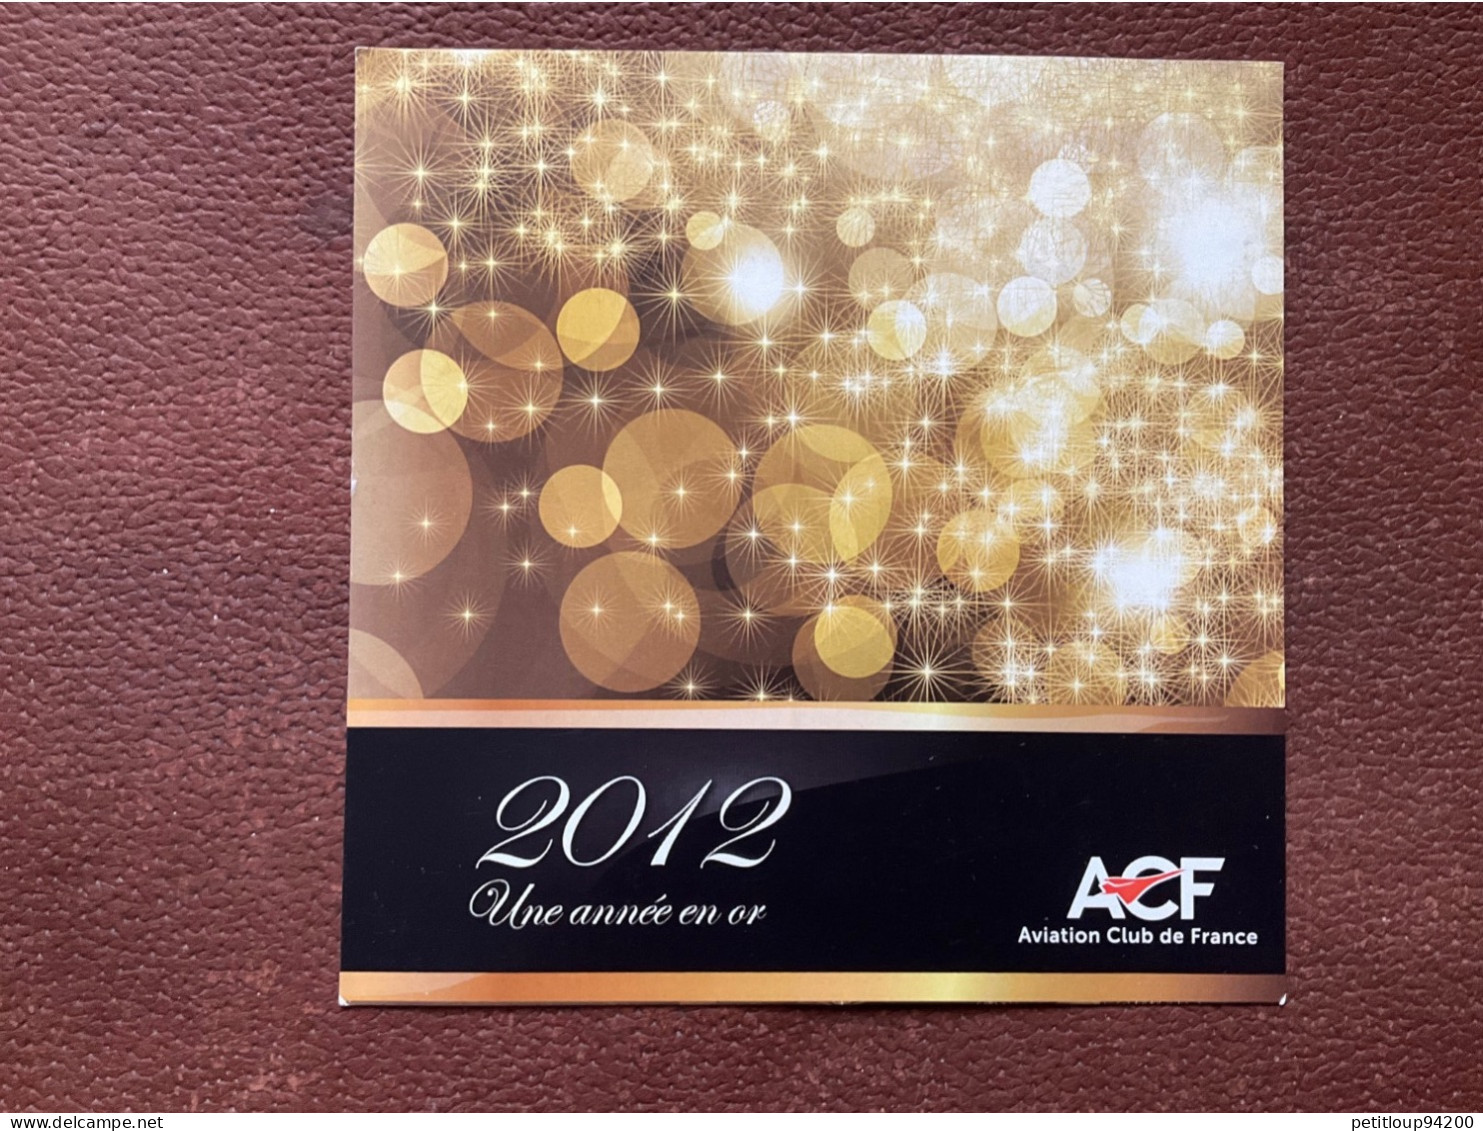 ACF Aviation Club De France UNE ANNÉE EN OR 2012 - Nieuwjaar